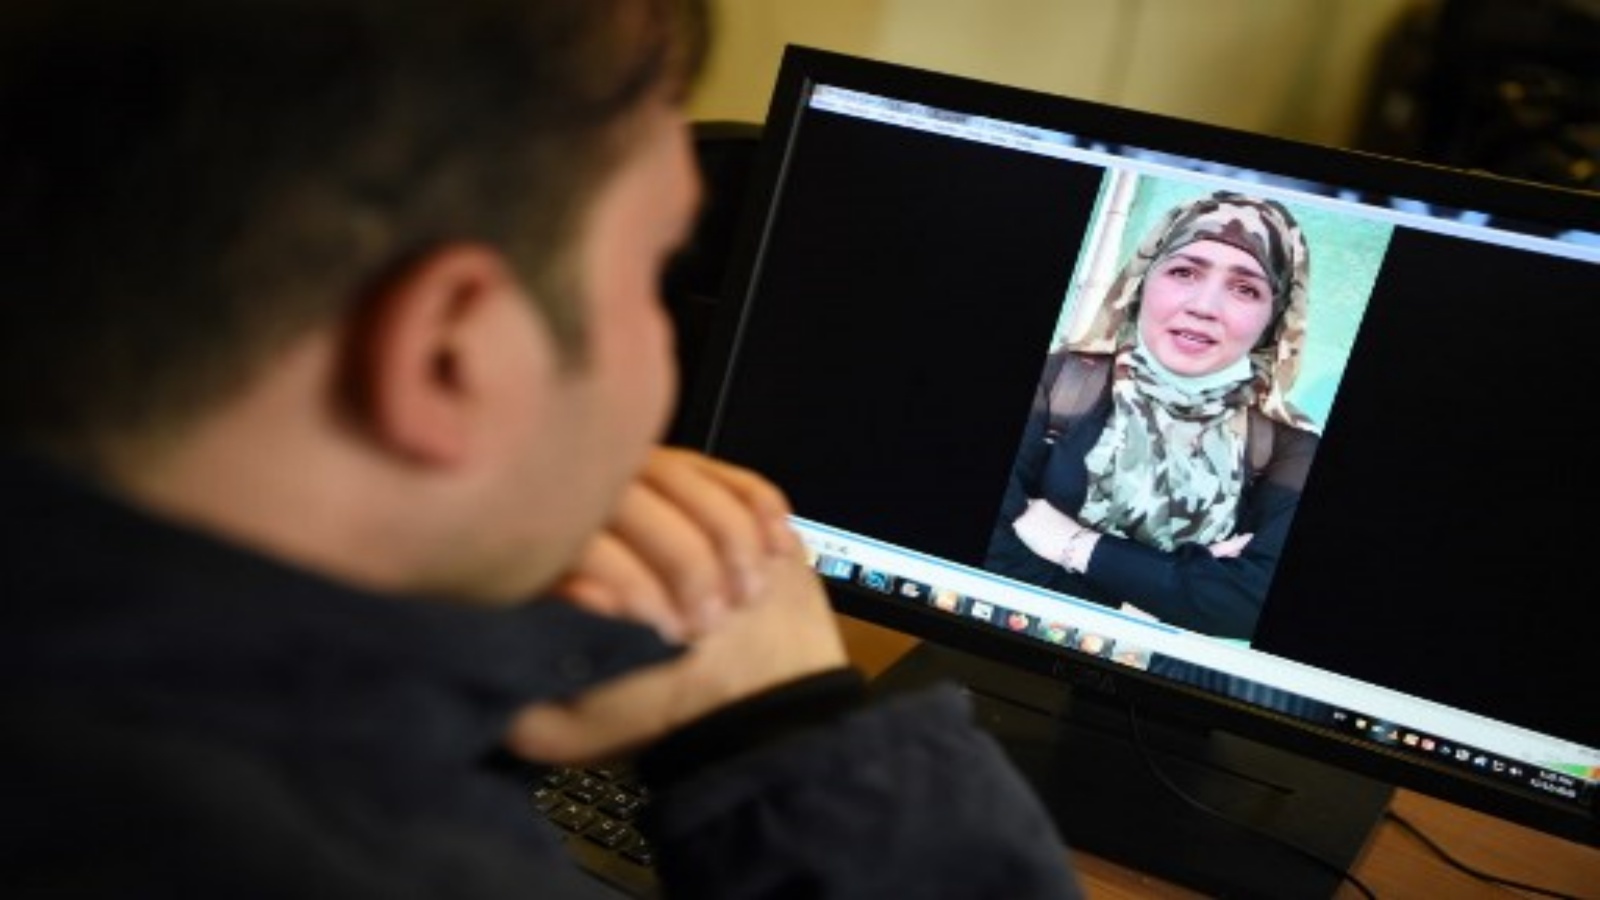 هذه الصورة التقطت في 12 نوفمبر 2020 ، رجل يشاهد مقطع فيديو لامرأة مزغان ، خرجت من السجن في أفغانستان في سبتمبر / أيلول بعد اعترافها بانتمائها إلى شبكة حقاني العنيفة لطالبان ، على شاشة كمبيوتر في كابول.